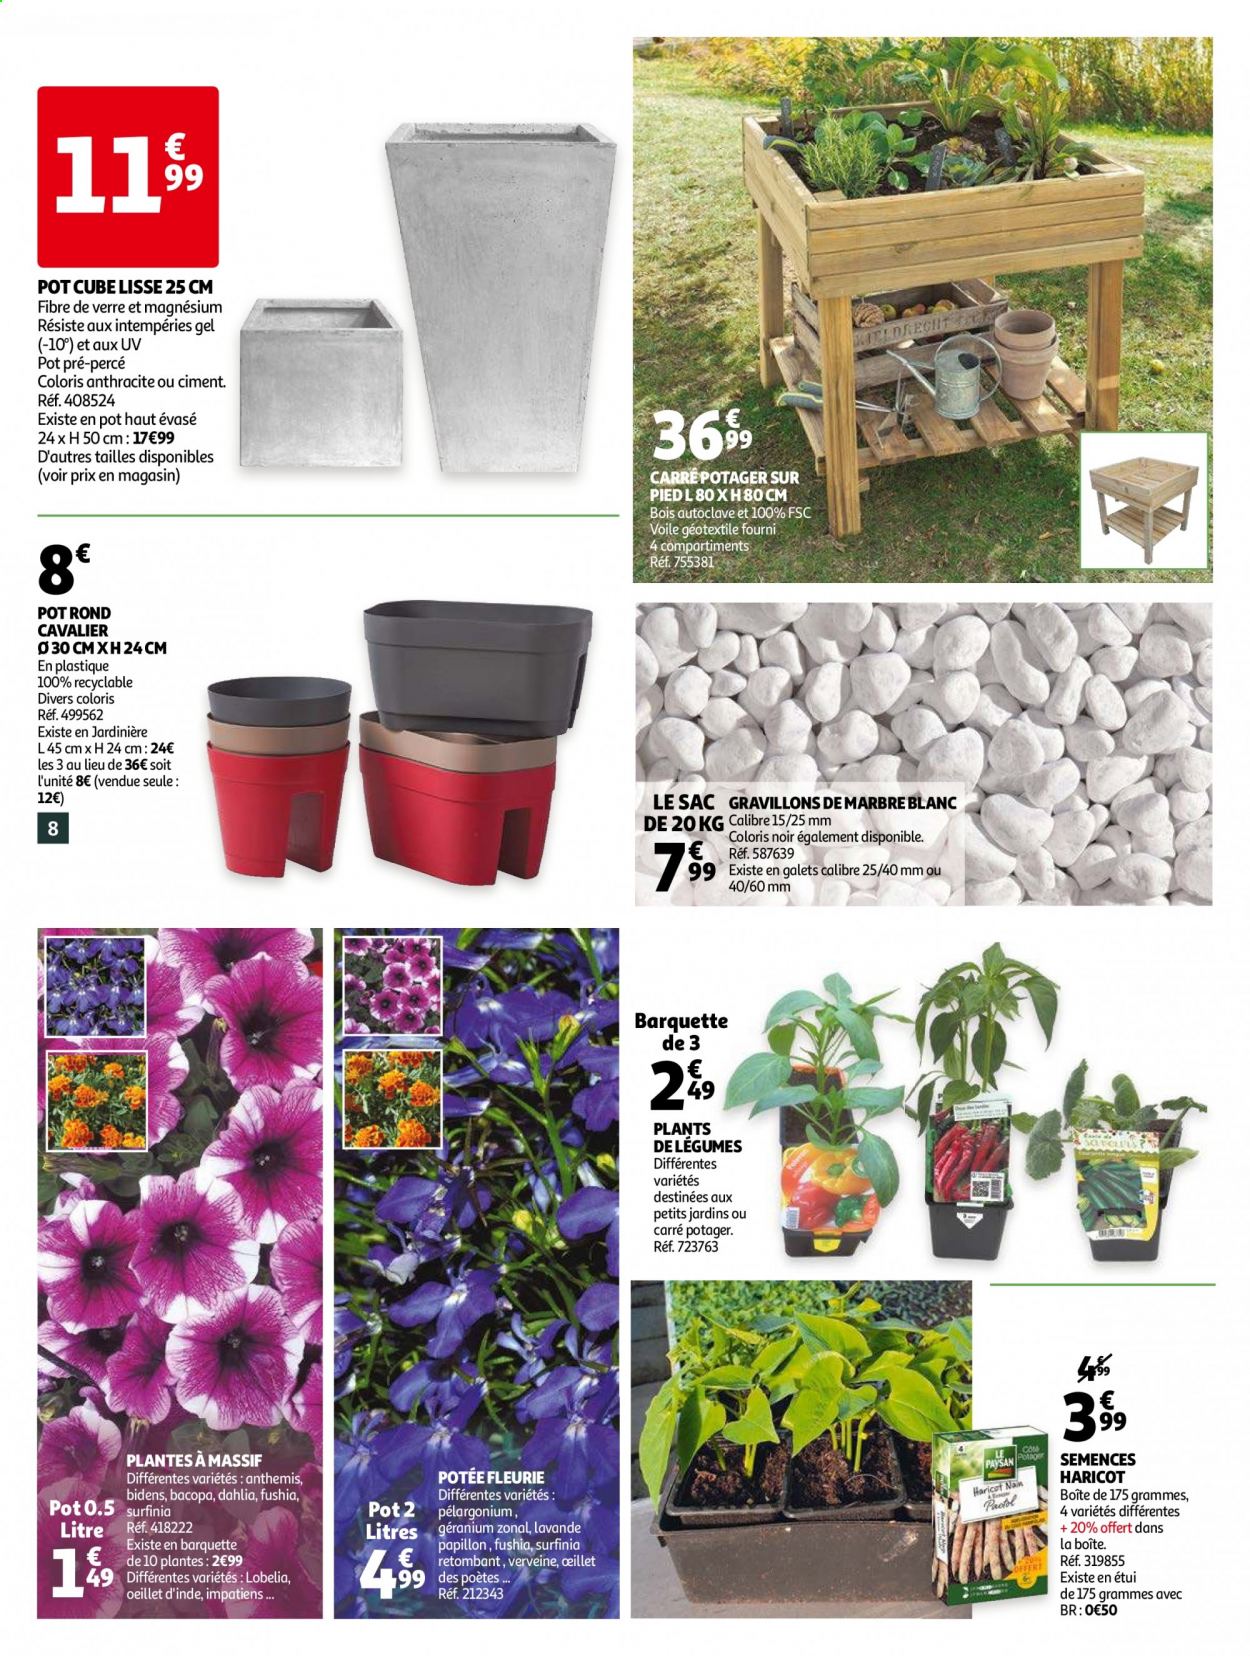 thumbnail - Catalogue Auchan - 07/04/2021 - 18/04/2021 - Produits soldés - haricots, sac à main, plantes vivaces, lavande, jardinière, carré potager, pot rond, Magne B6. Page 8.